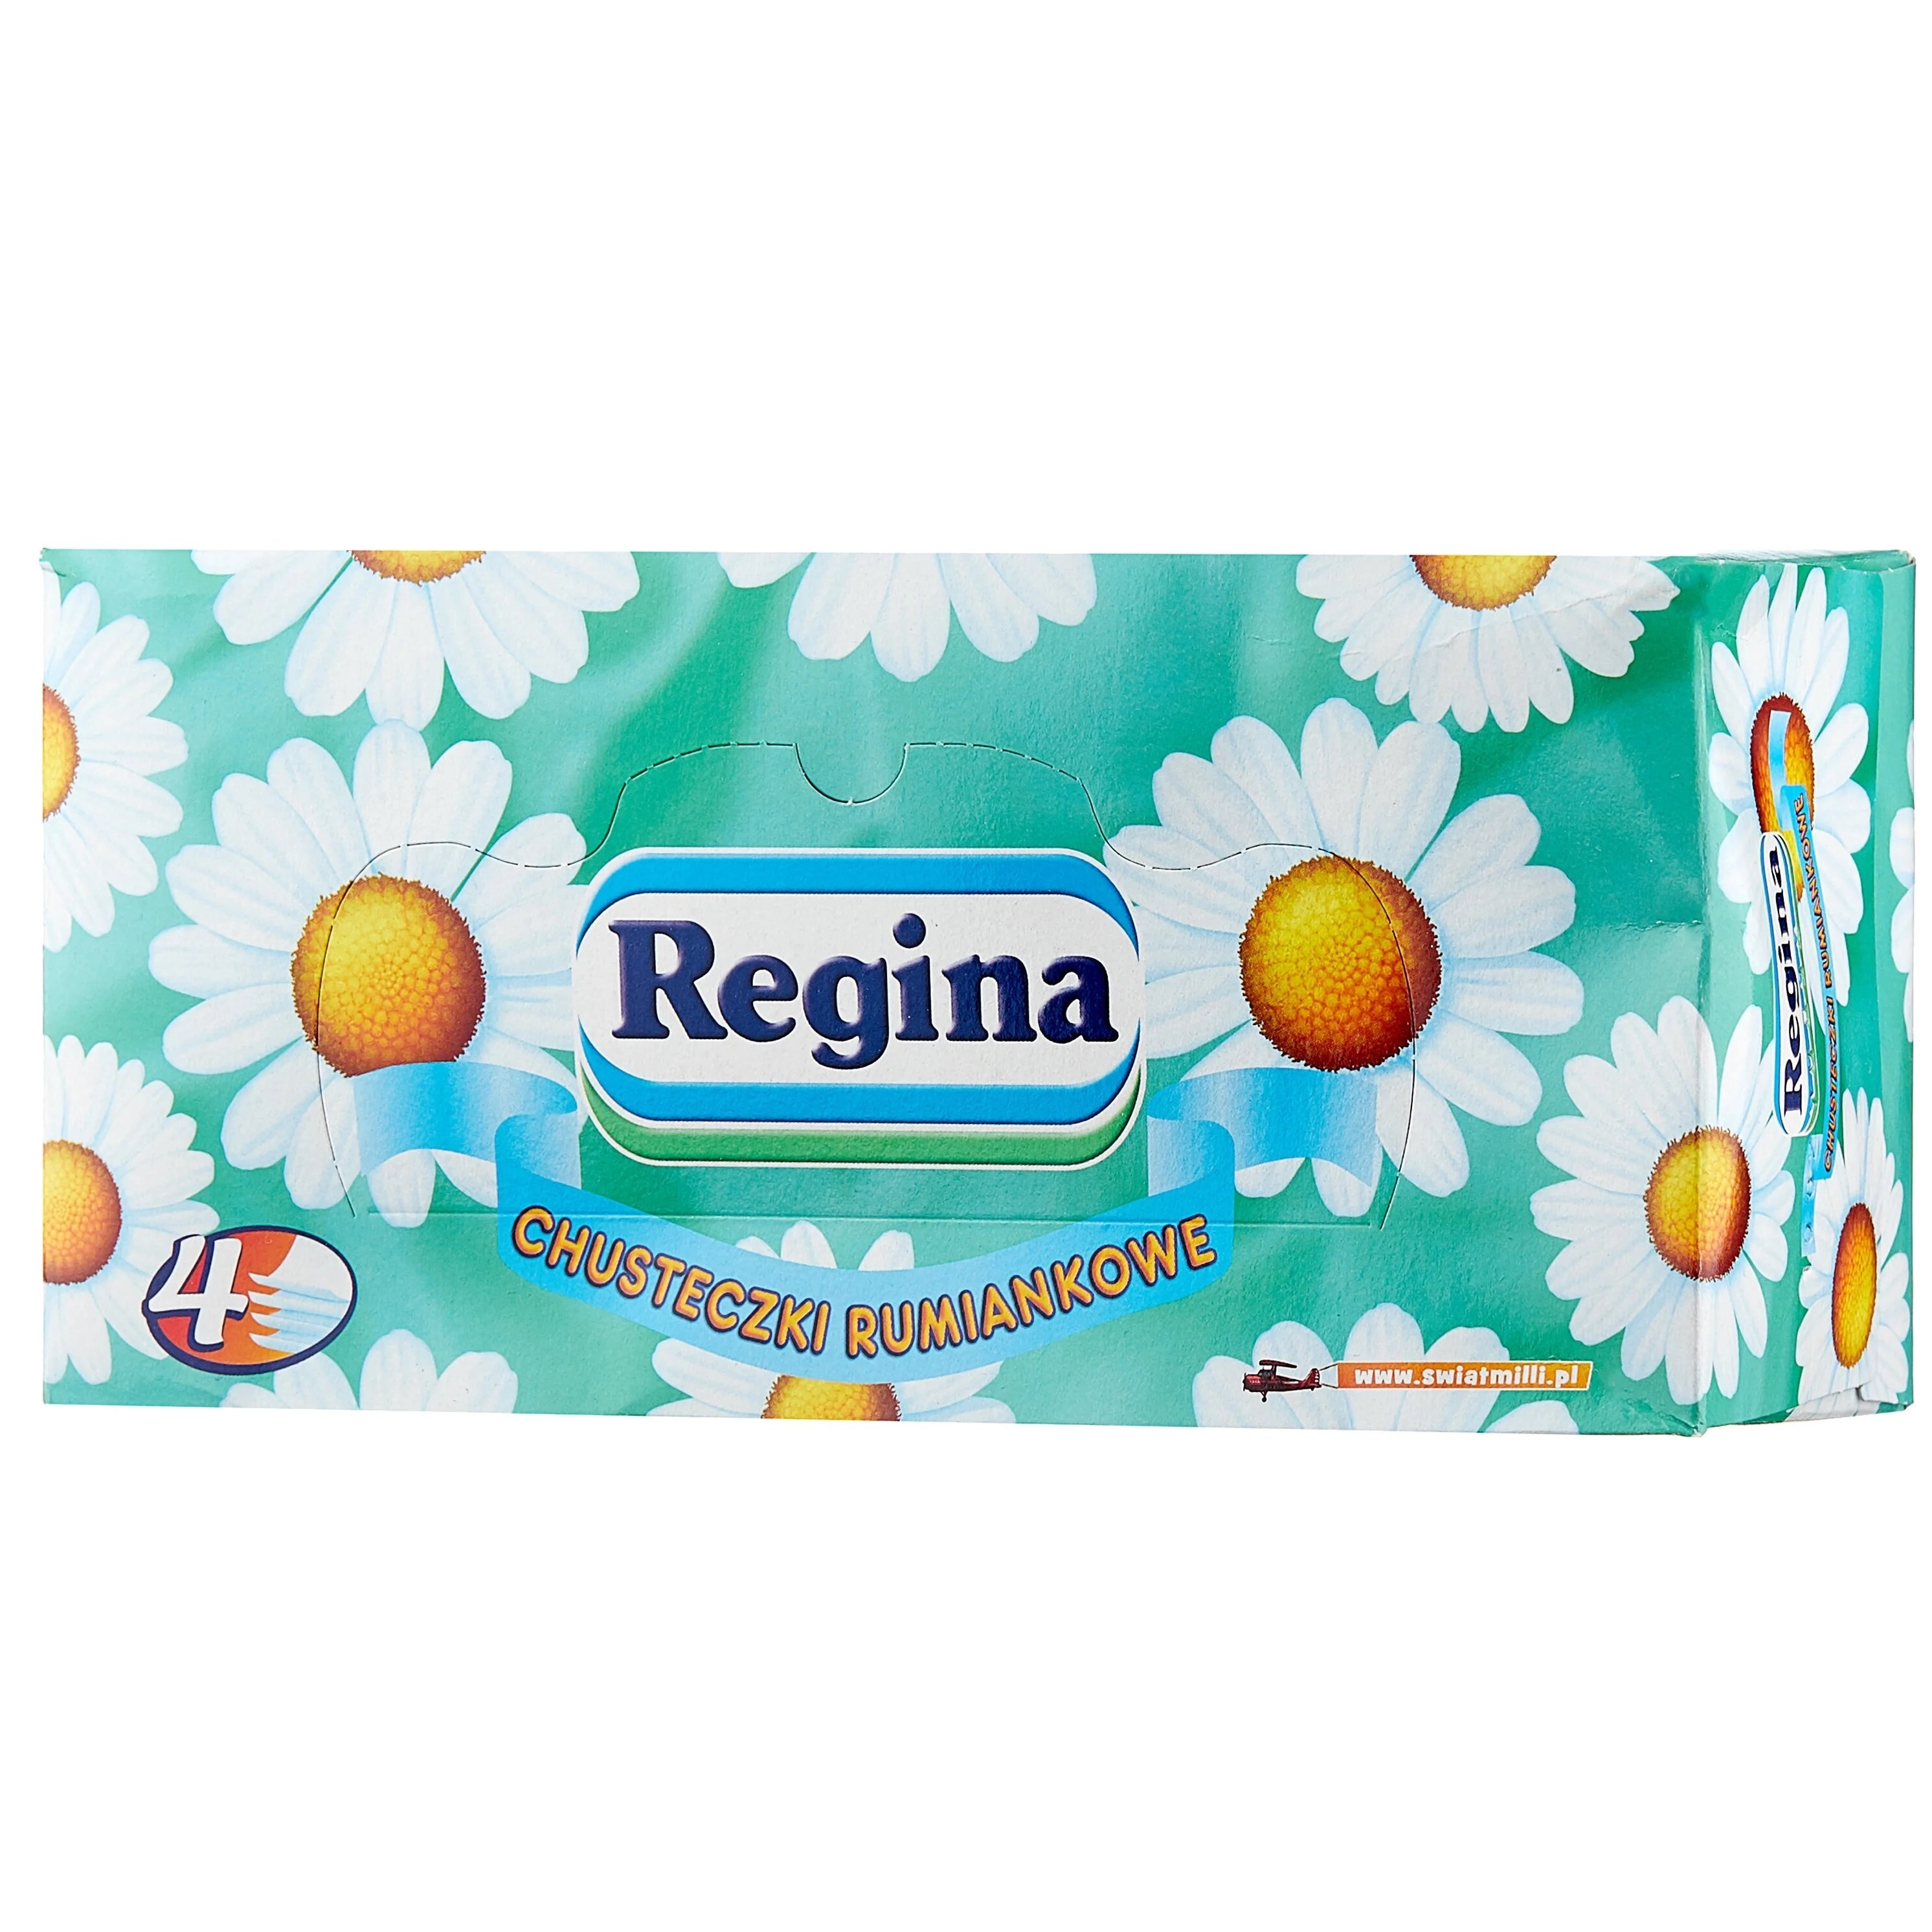 Салфетки косметические Regina Elegante Ромашка, четырехслойные, 96 шт. - фото 1